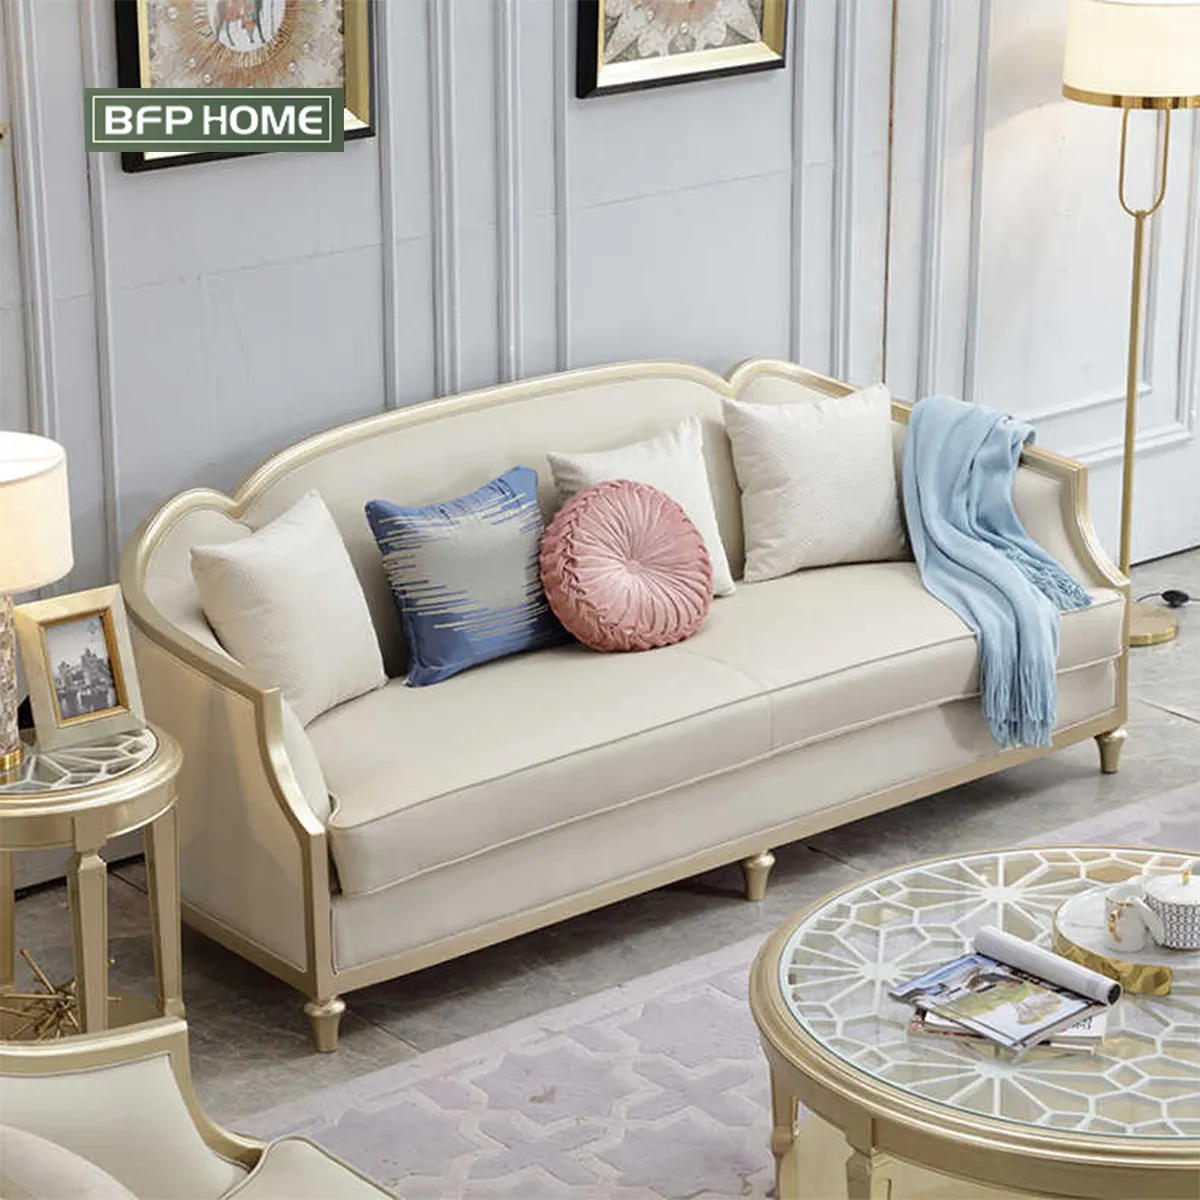 BFP – meubles de maison à guichet unique, Style américain de luxe, cadre en bois massif, ensemble de canapés de salon en cuir véritable, meubles